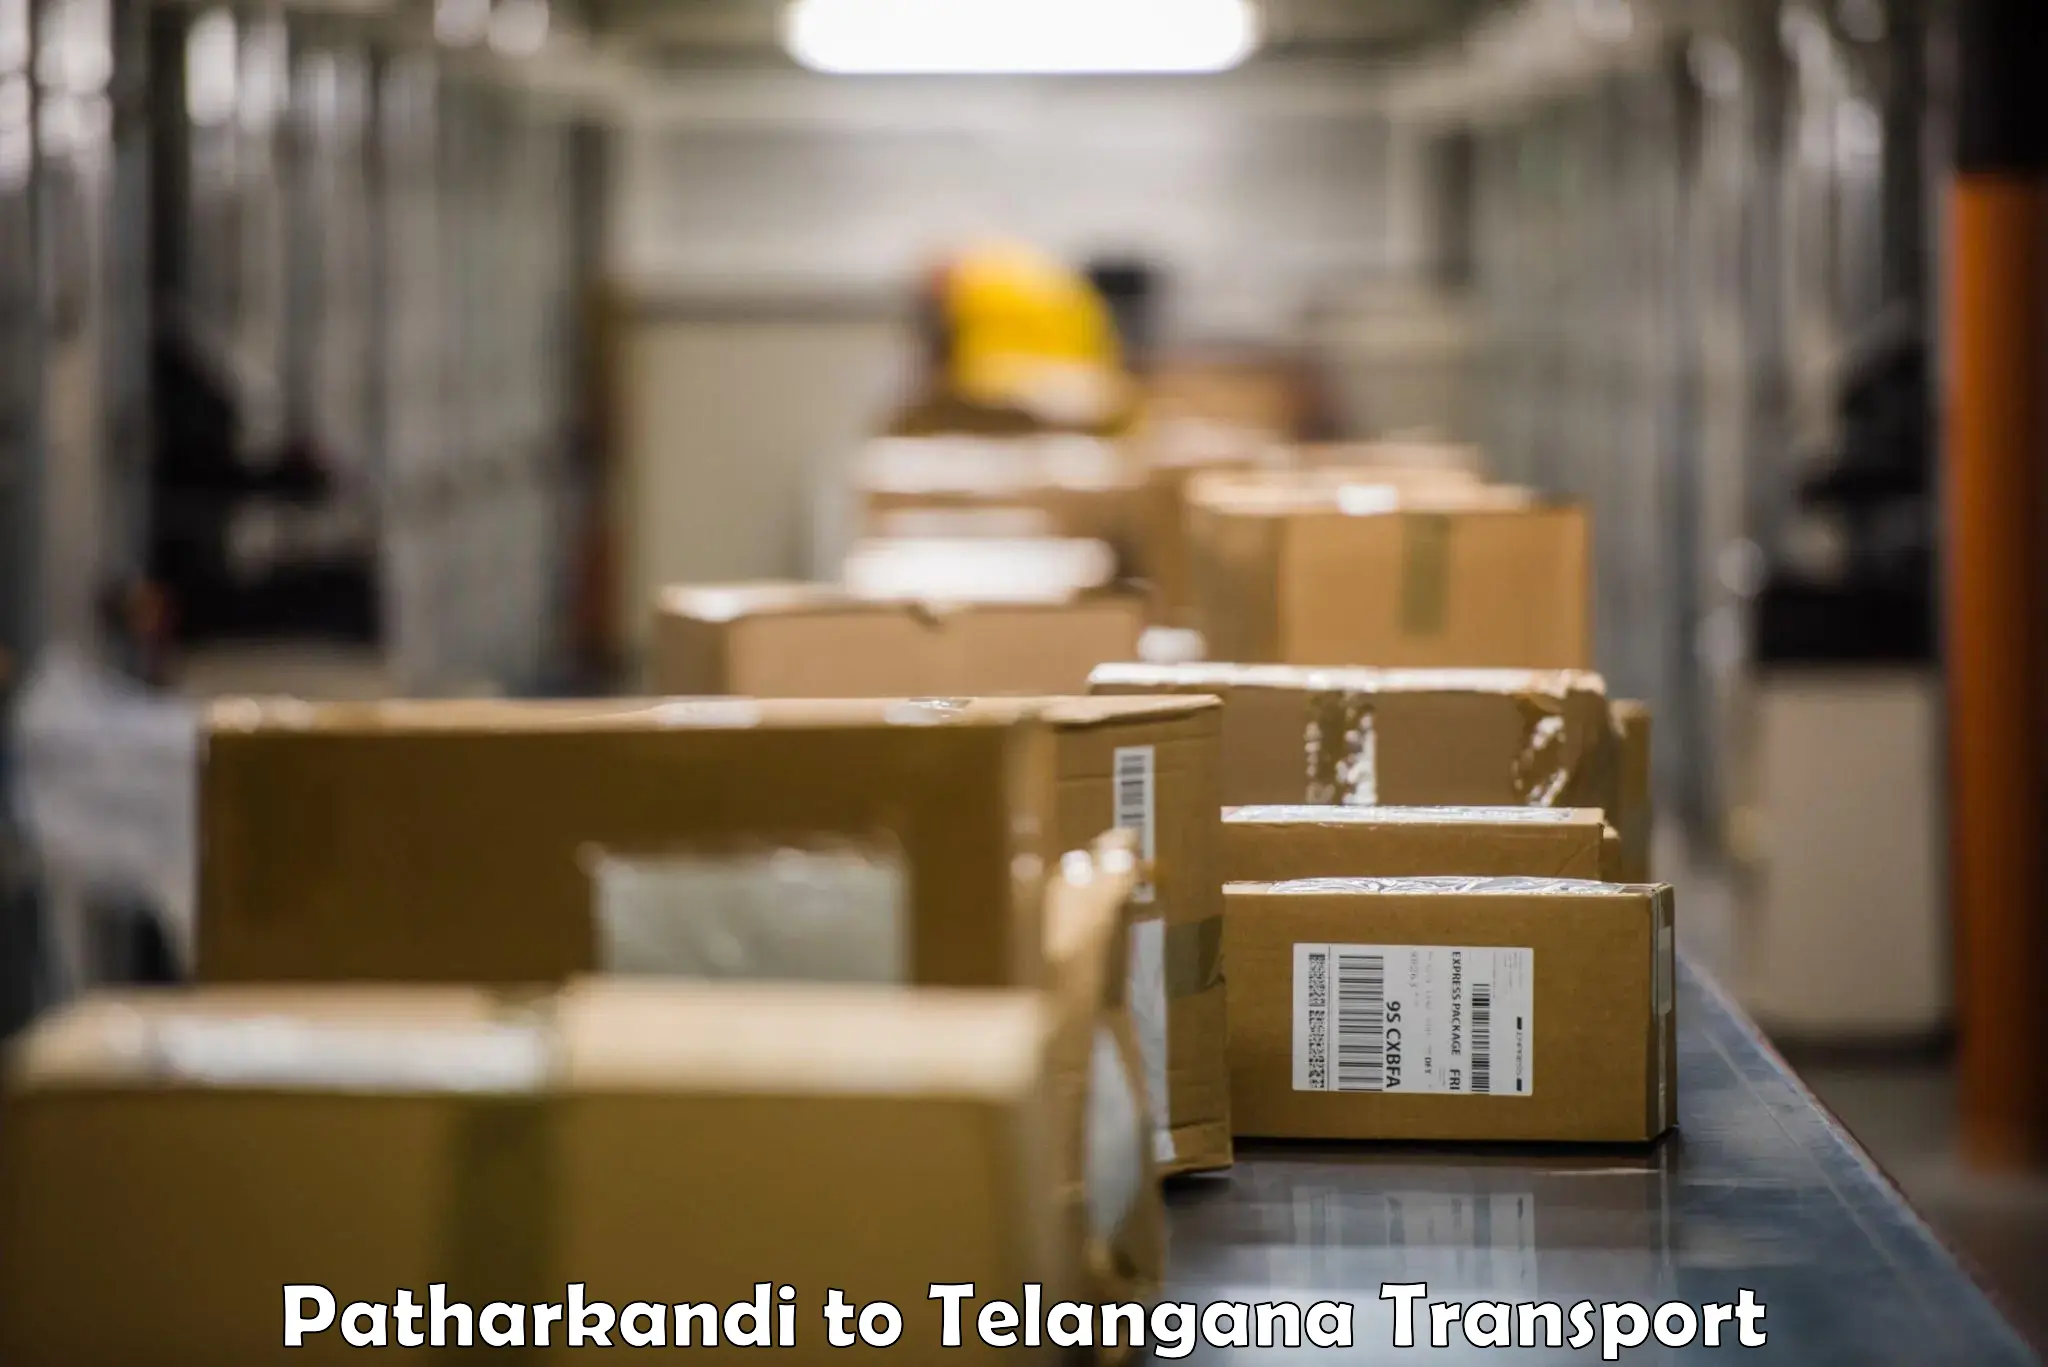 Cargo train transport services Patharkandi to Wanaparthy